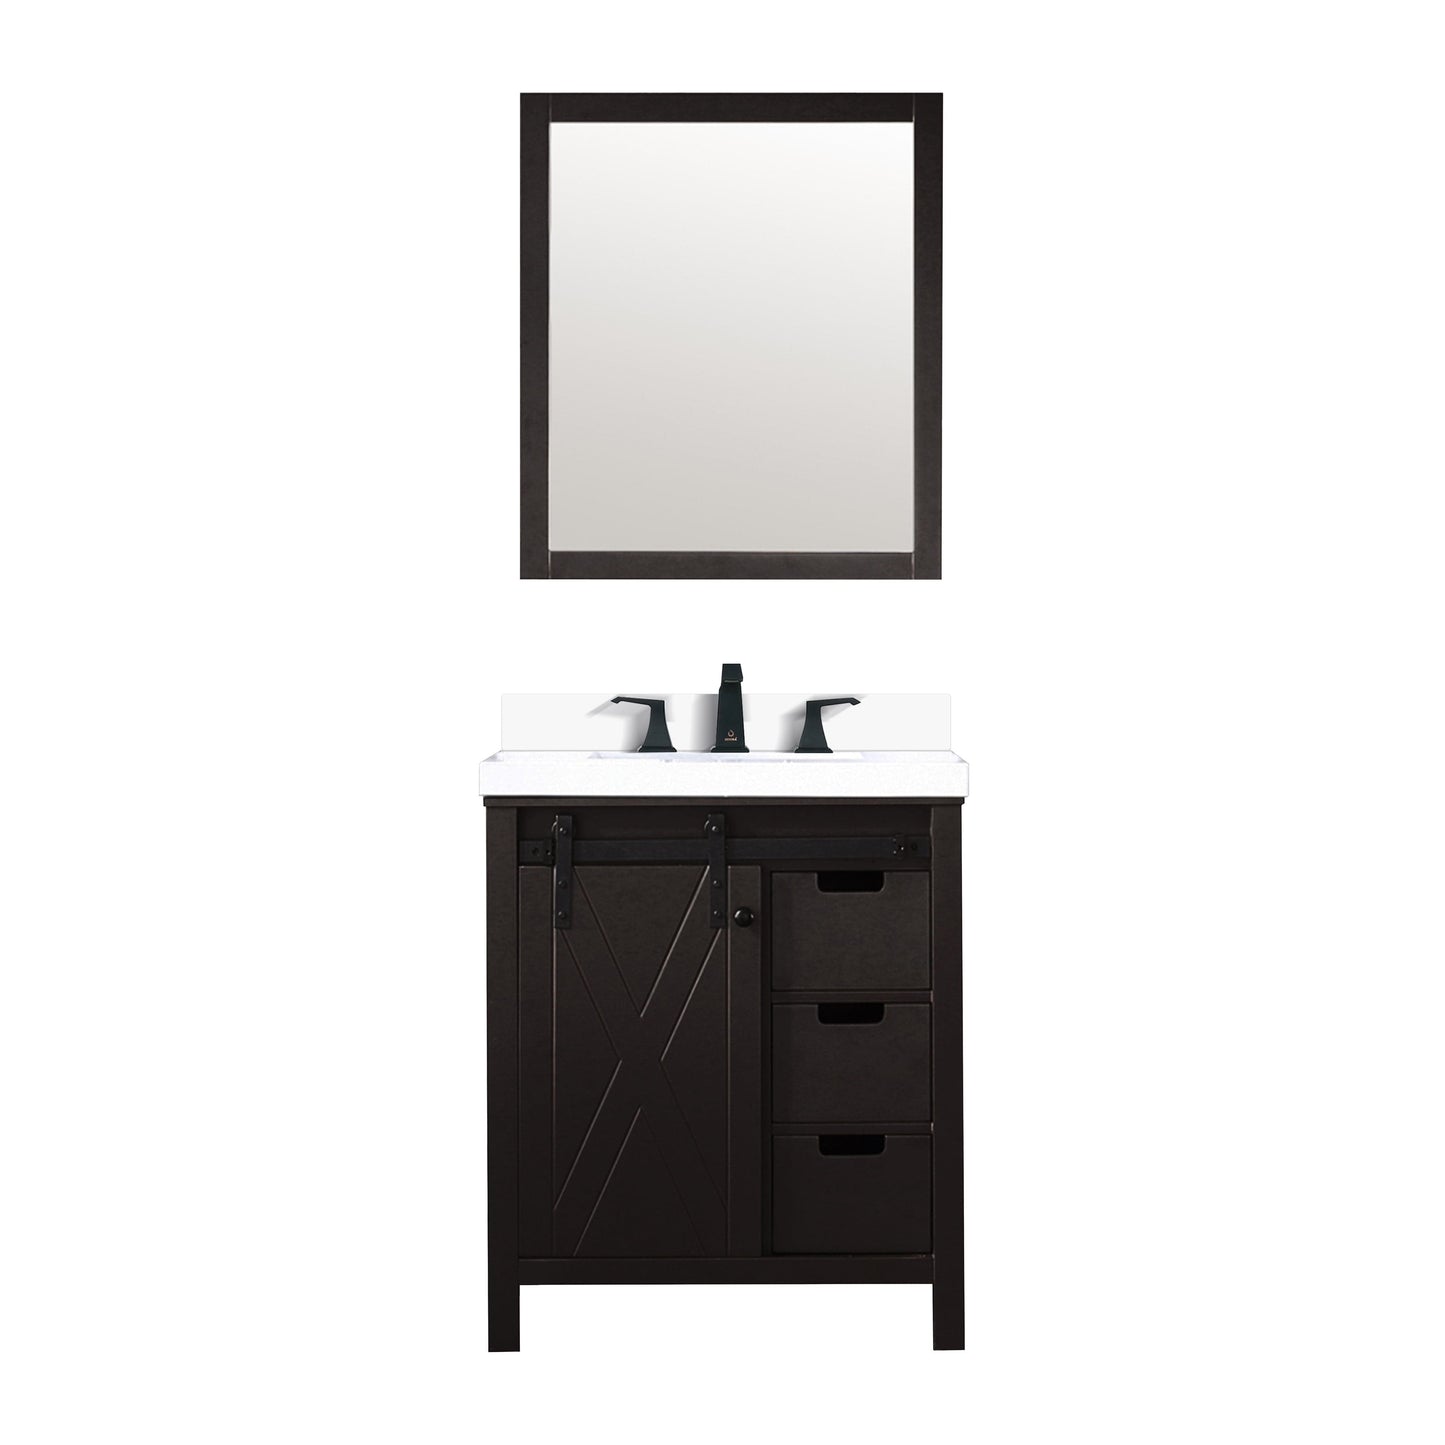 Bell + Modern Bathroom Vanity Ketchum 30" x 22" Single Bath Vanity